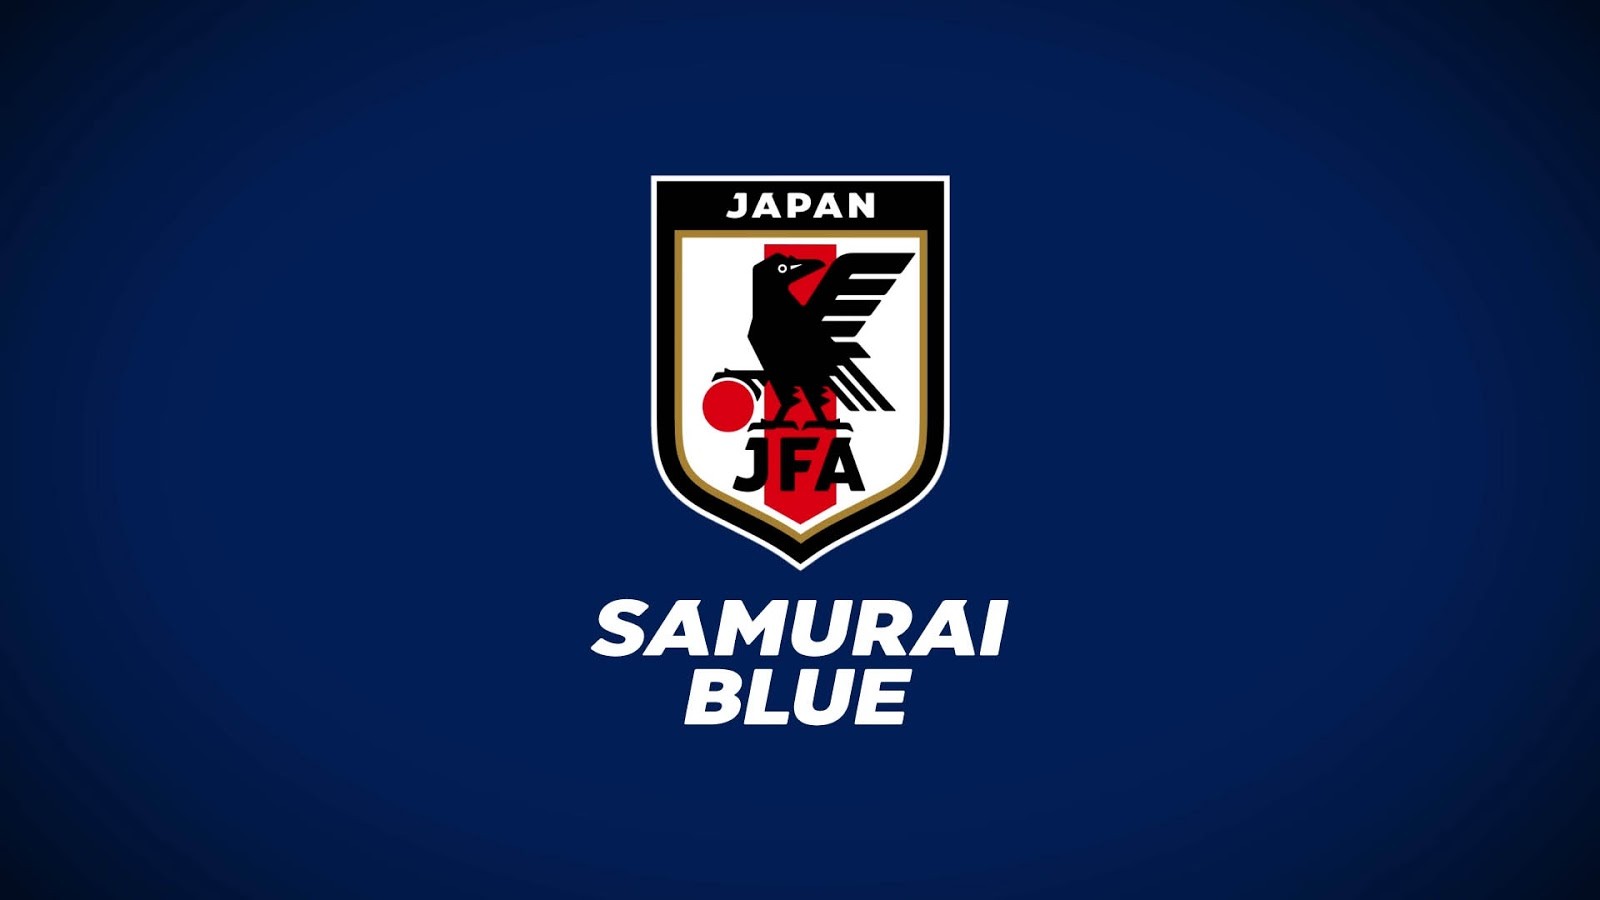 新苍蓝武士,日本足协发布日本国家队全新队徽